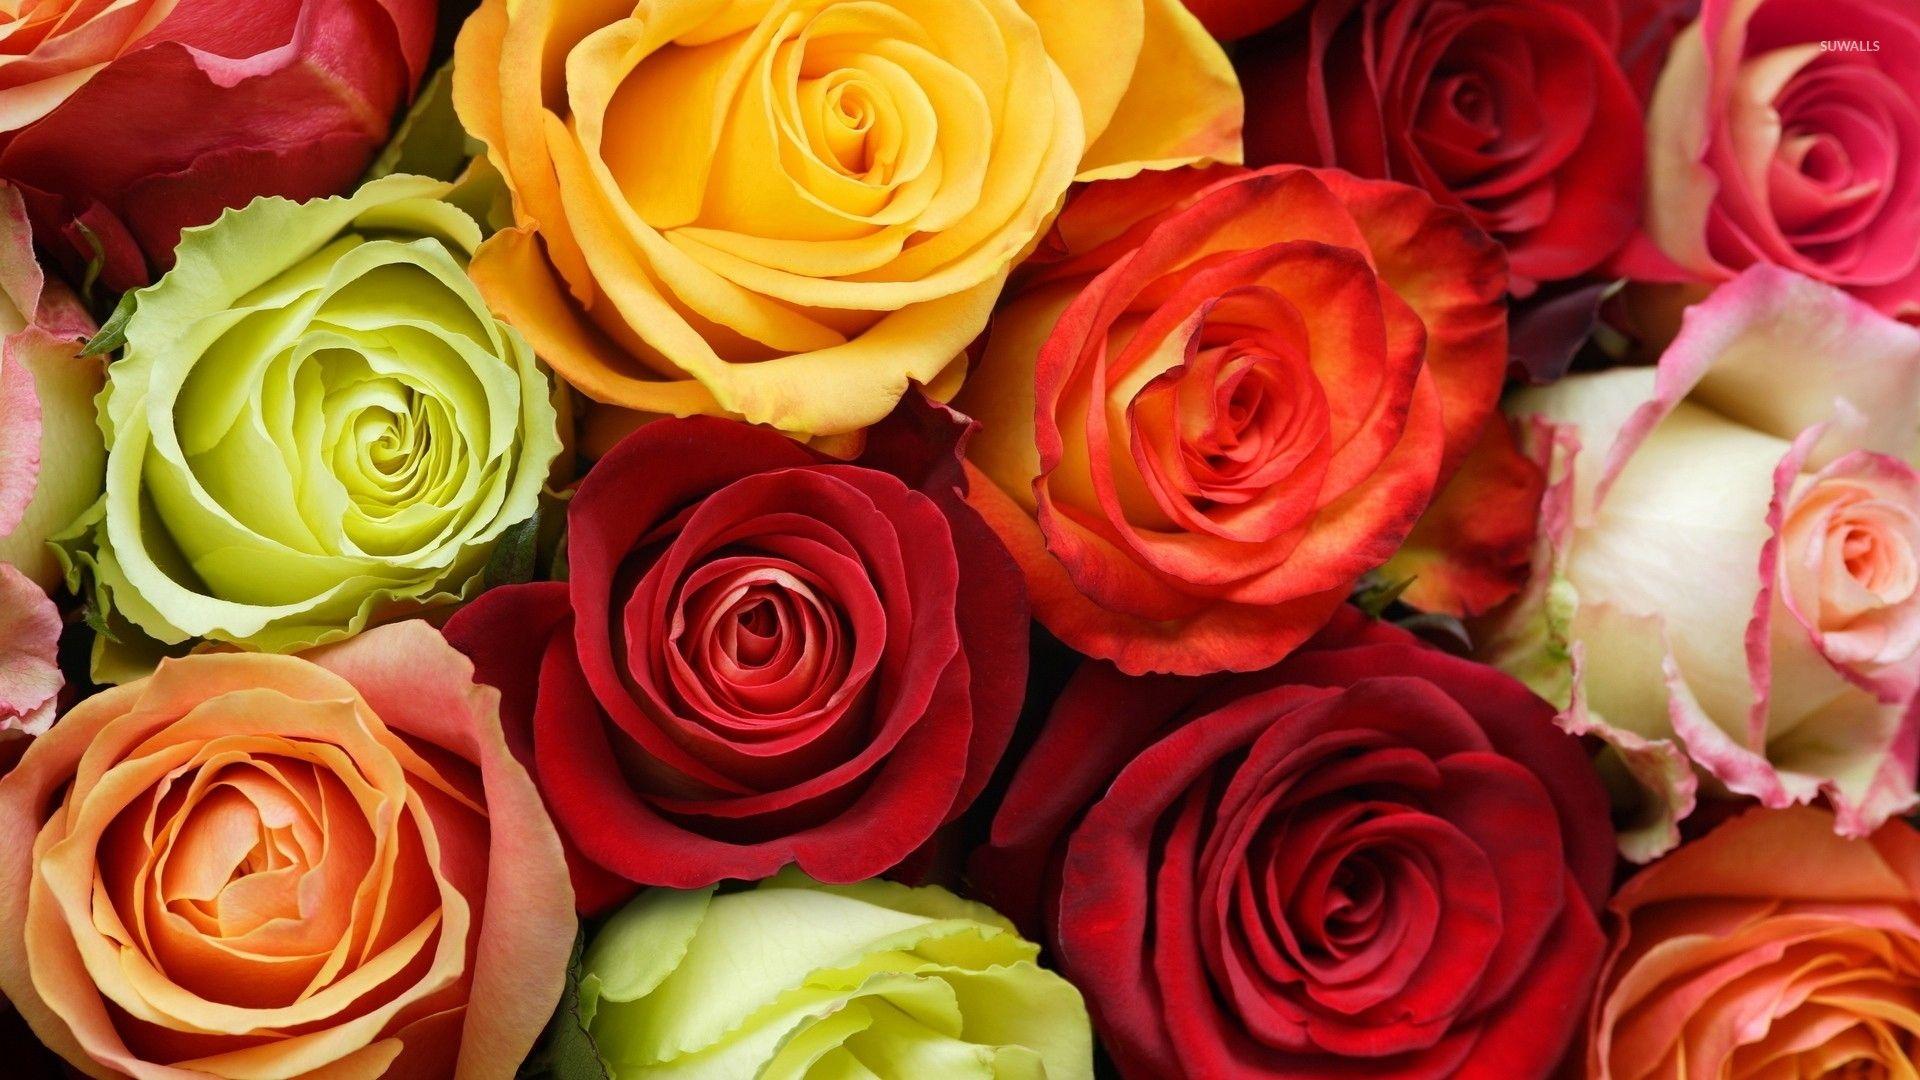 Colorful roses wallpaper wallpaper